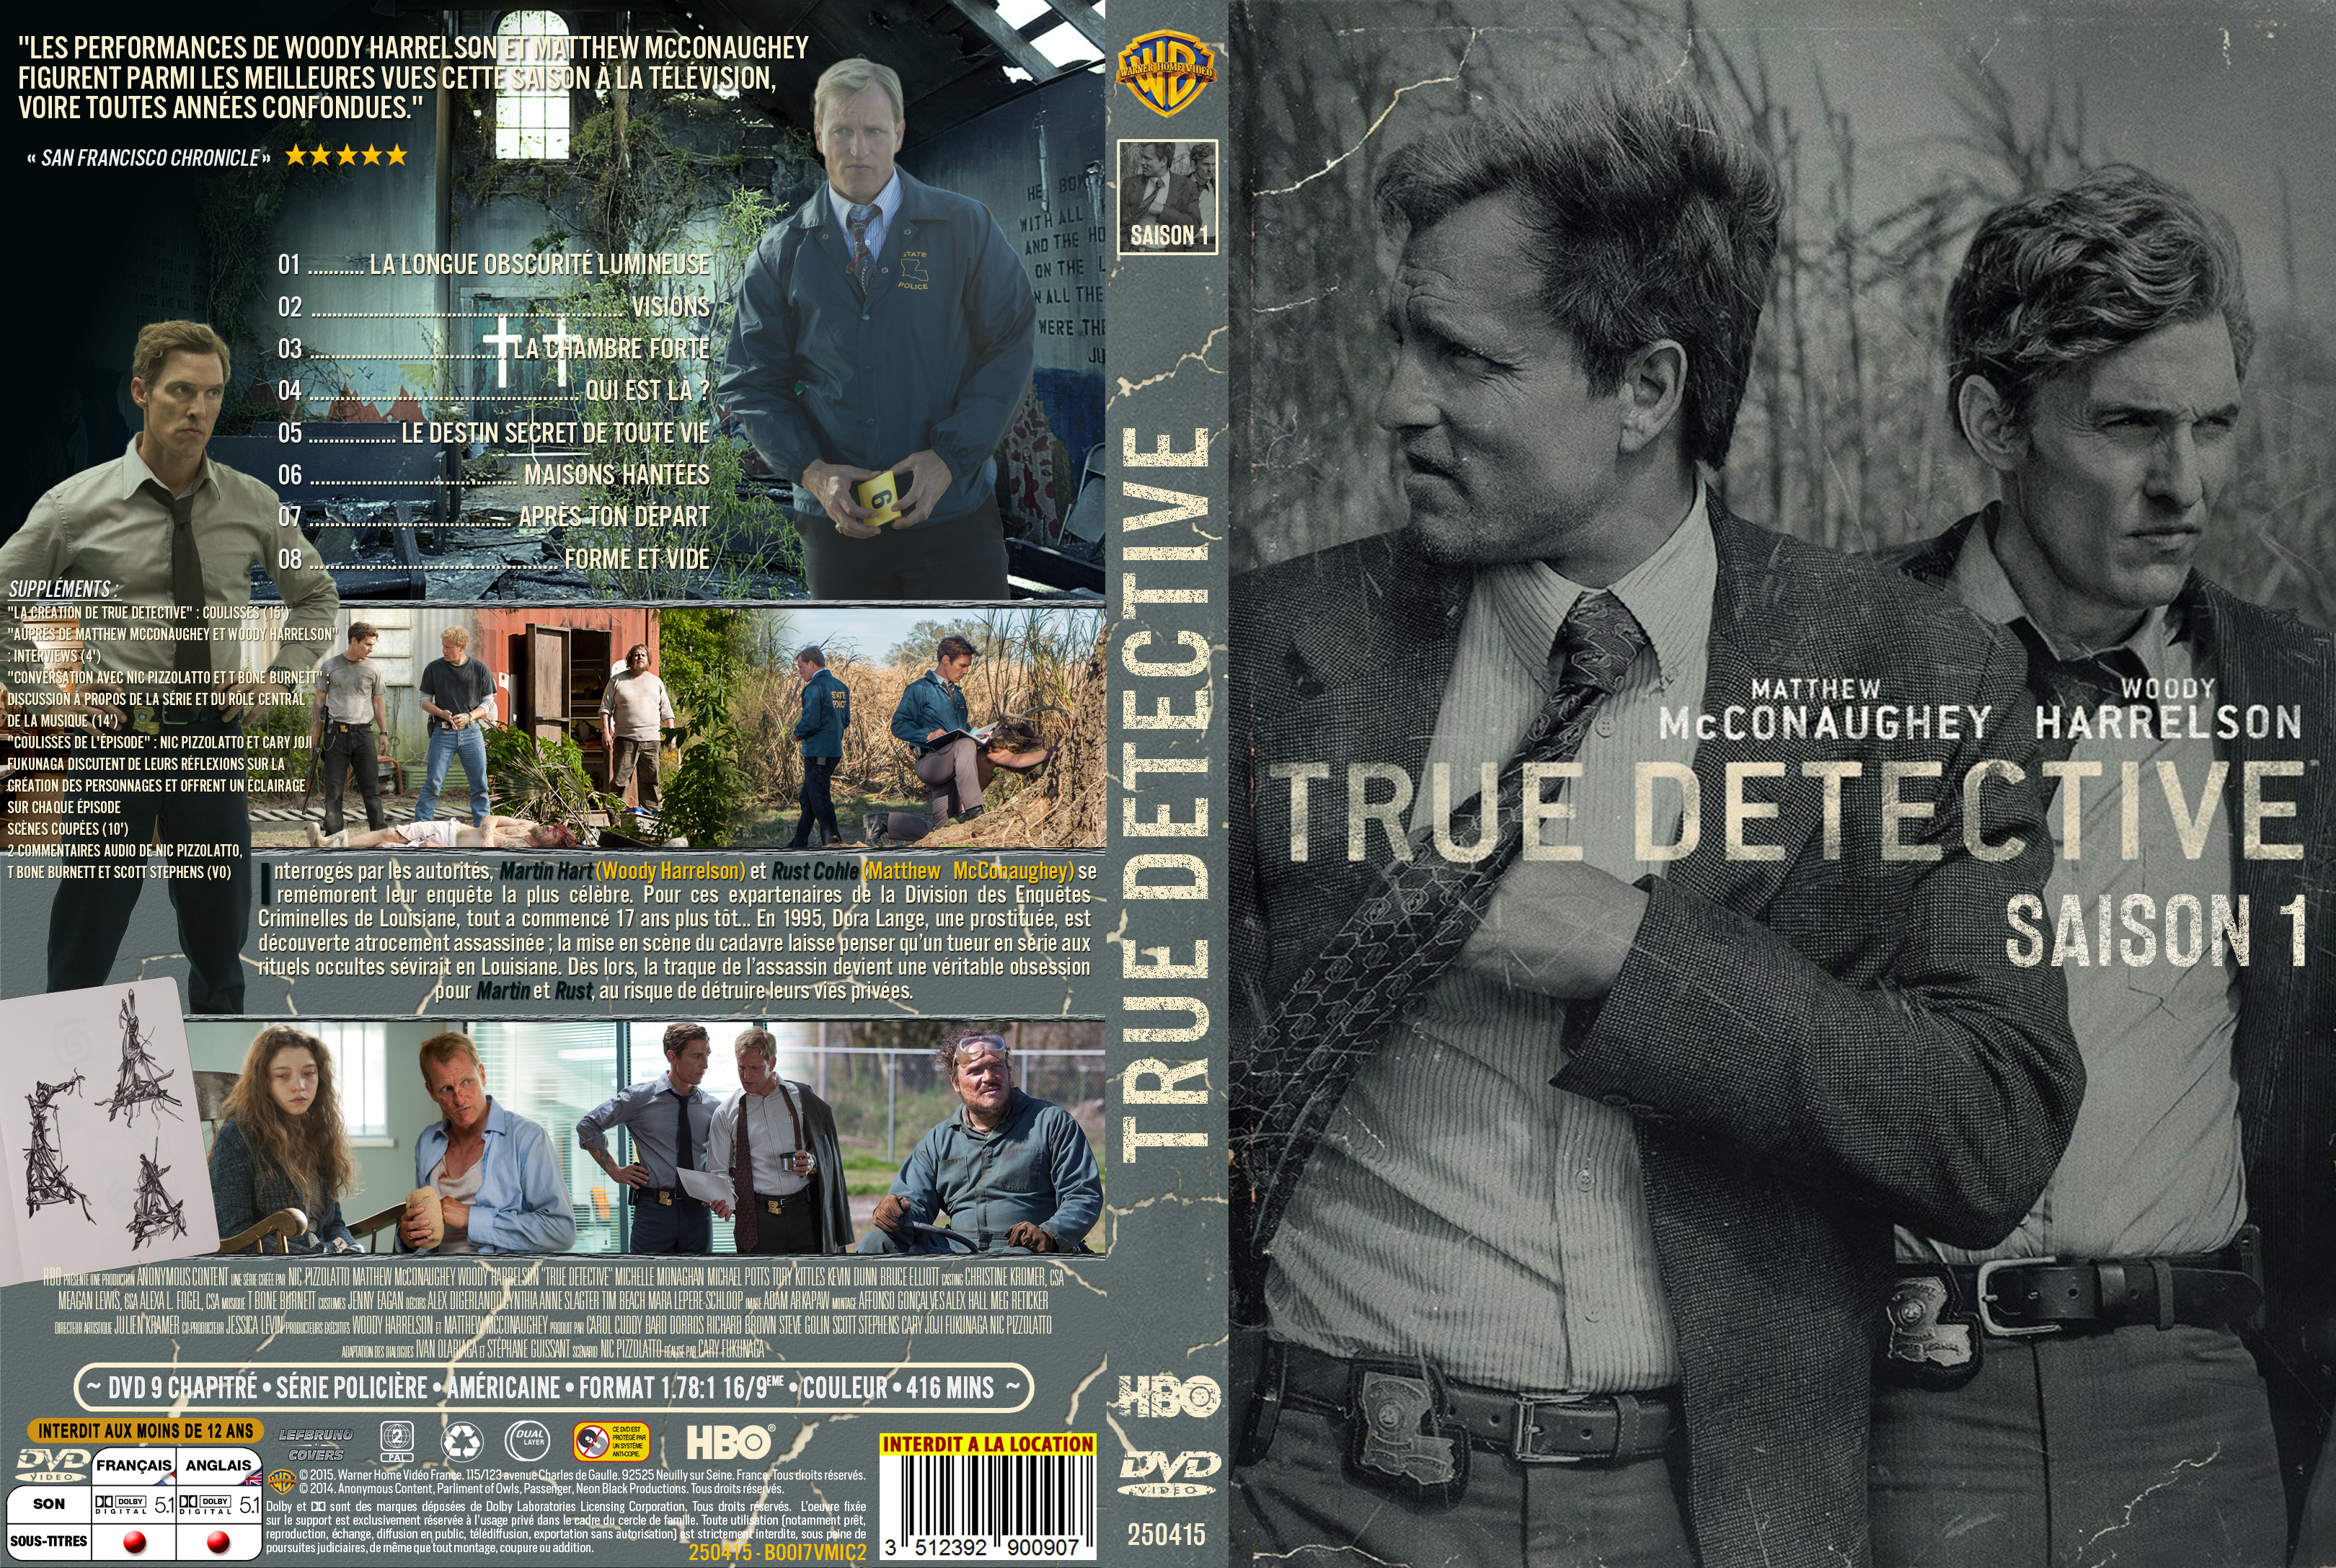 Jaquette DVD True Detective Saison 1 custom v2